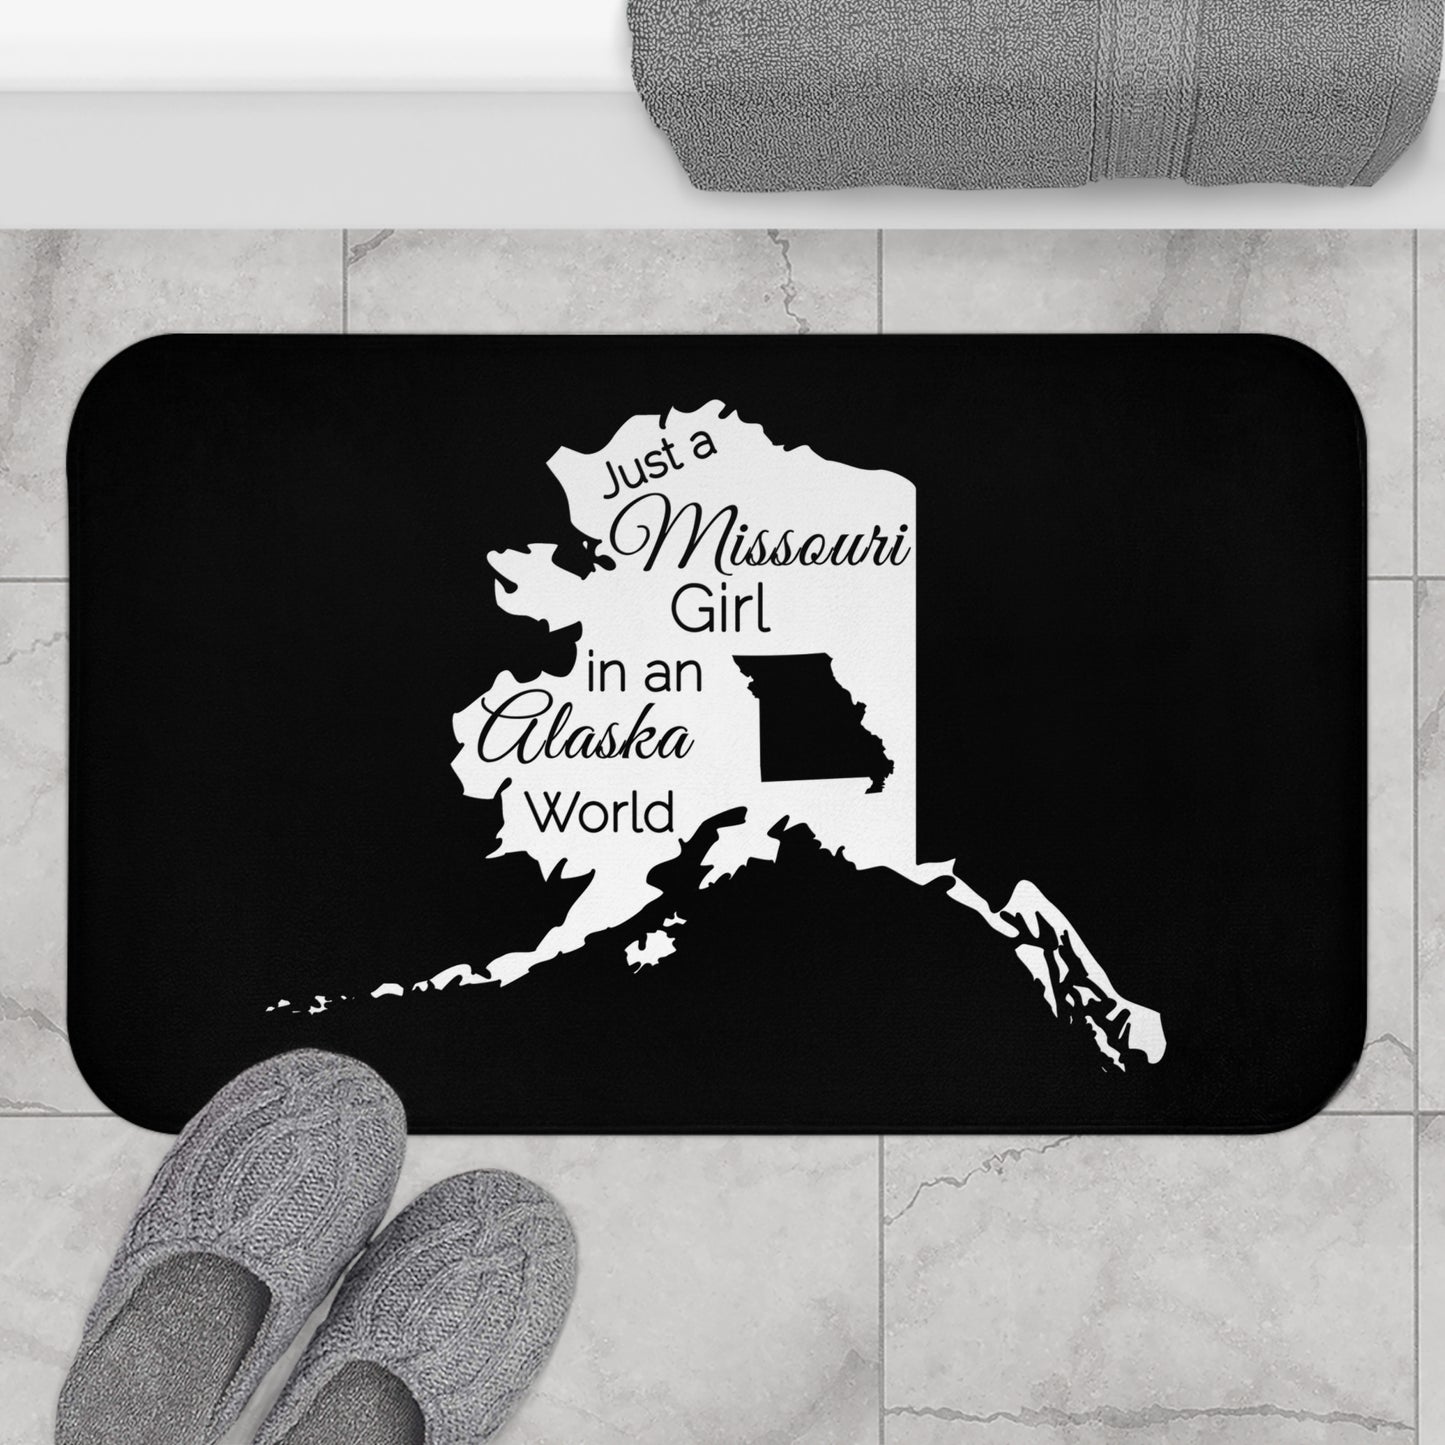 Just a Missouri Girl in an Alaska World Bath Mat